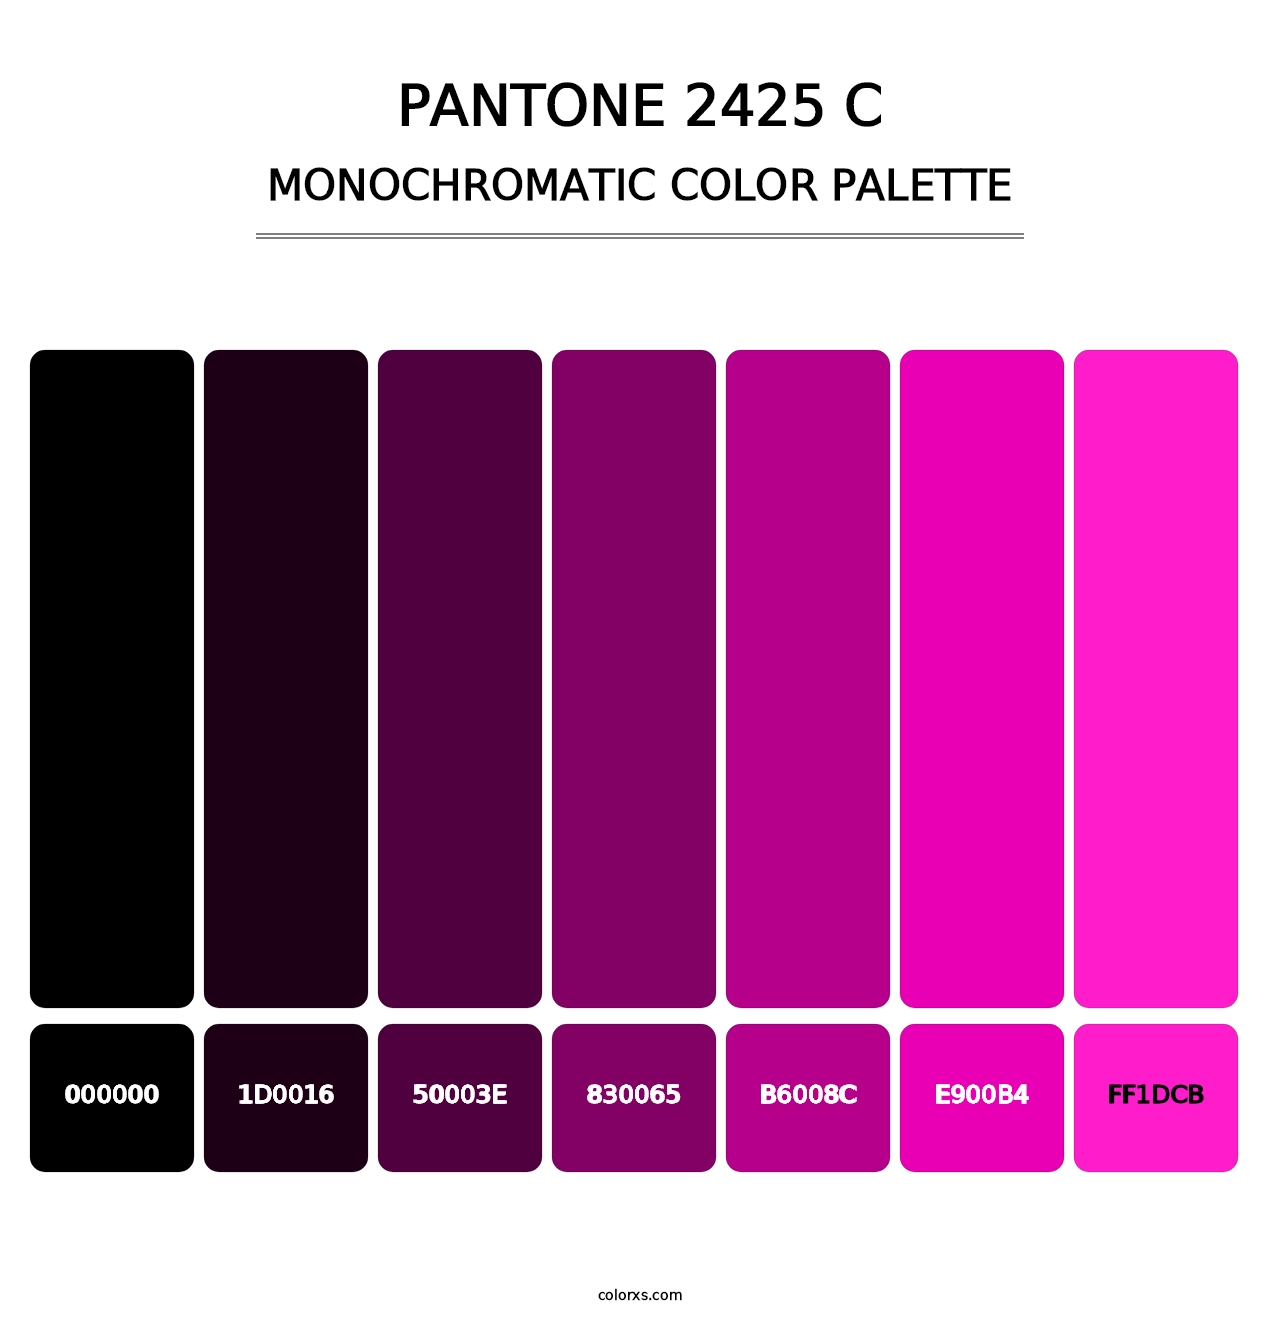 PANTONE 2425 C - Monochromatic Color Palette